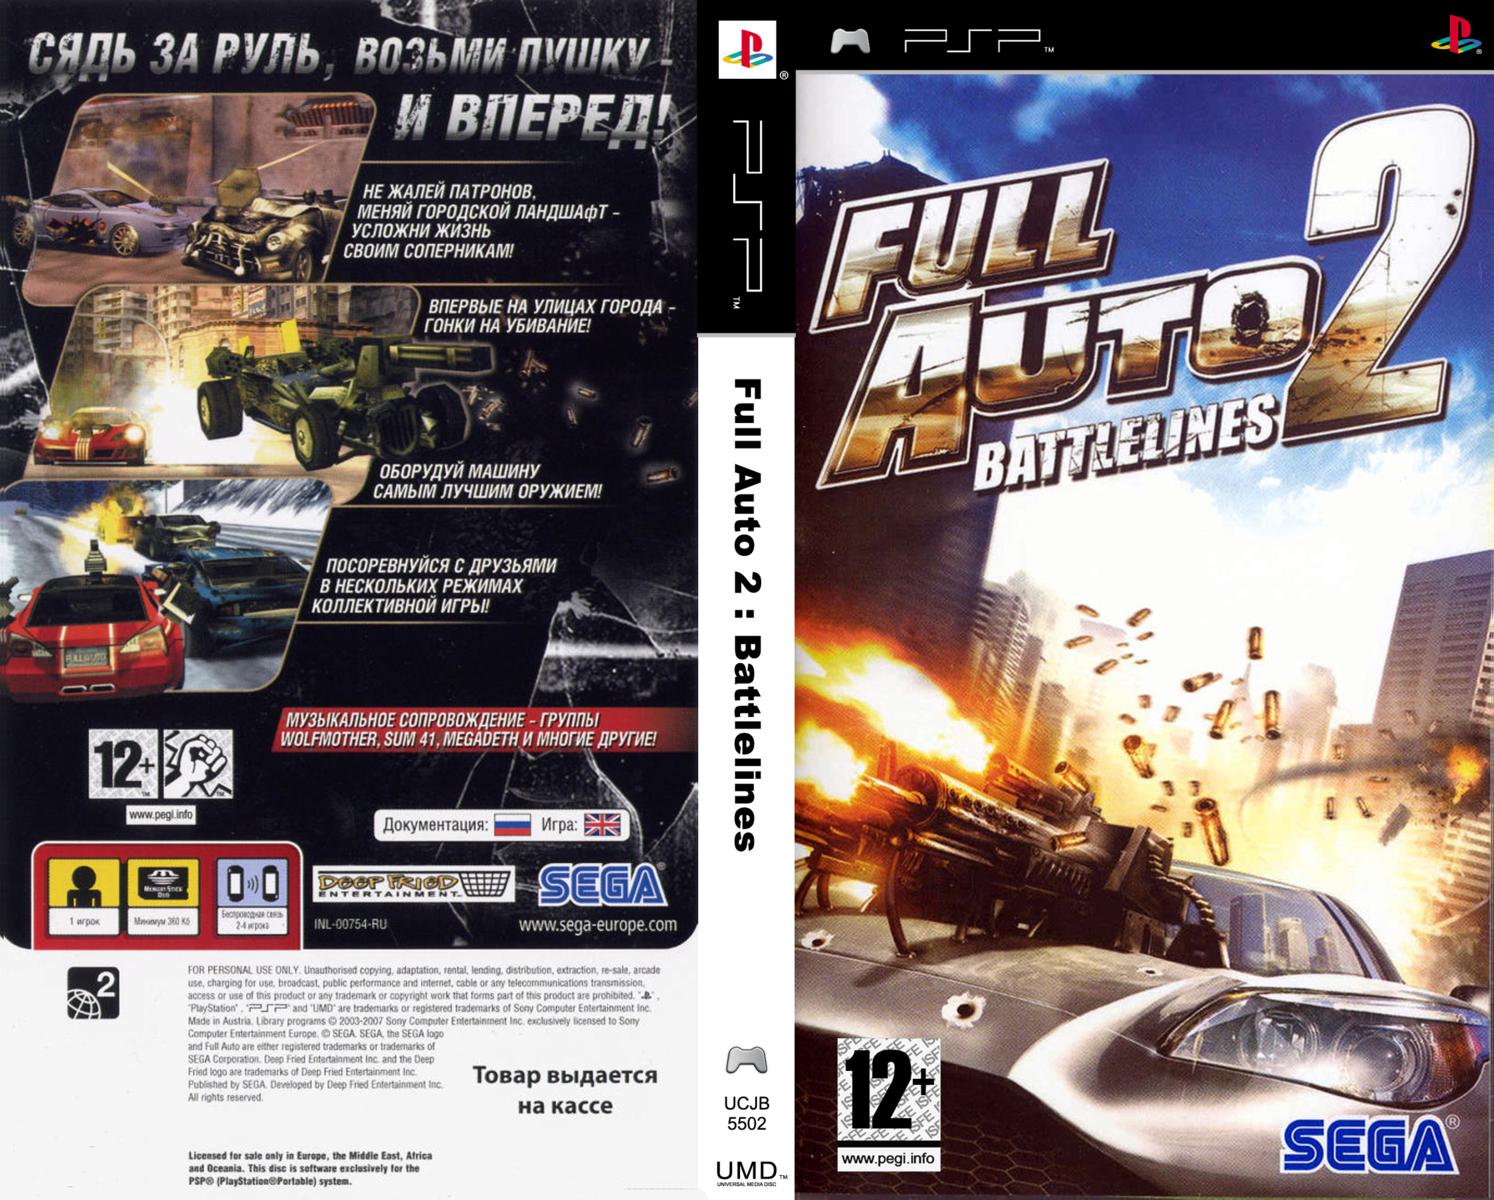 Игры на псп 2. Full auto 2 PSP. Full auto 2 Battlelines PSP. Full auto 2 Battlelines PSP обложка. ISO игра.